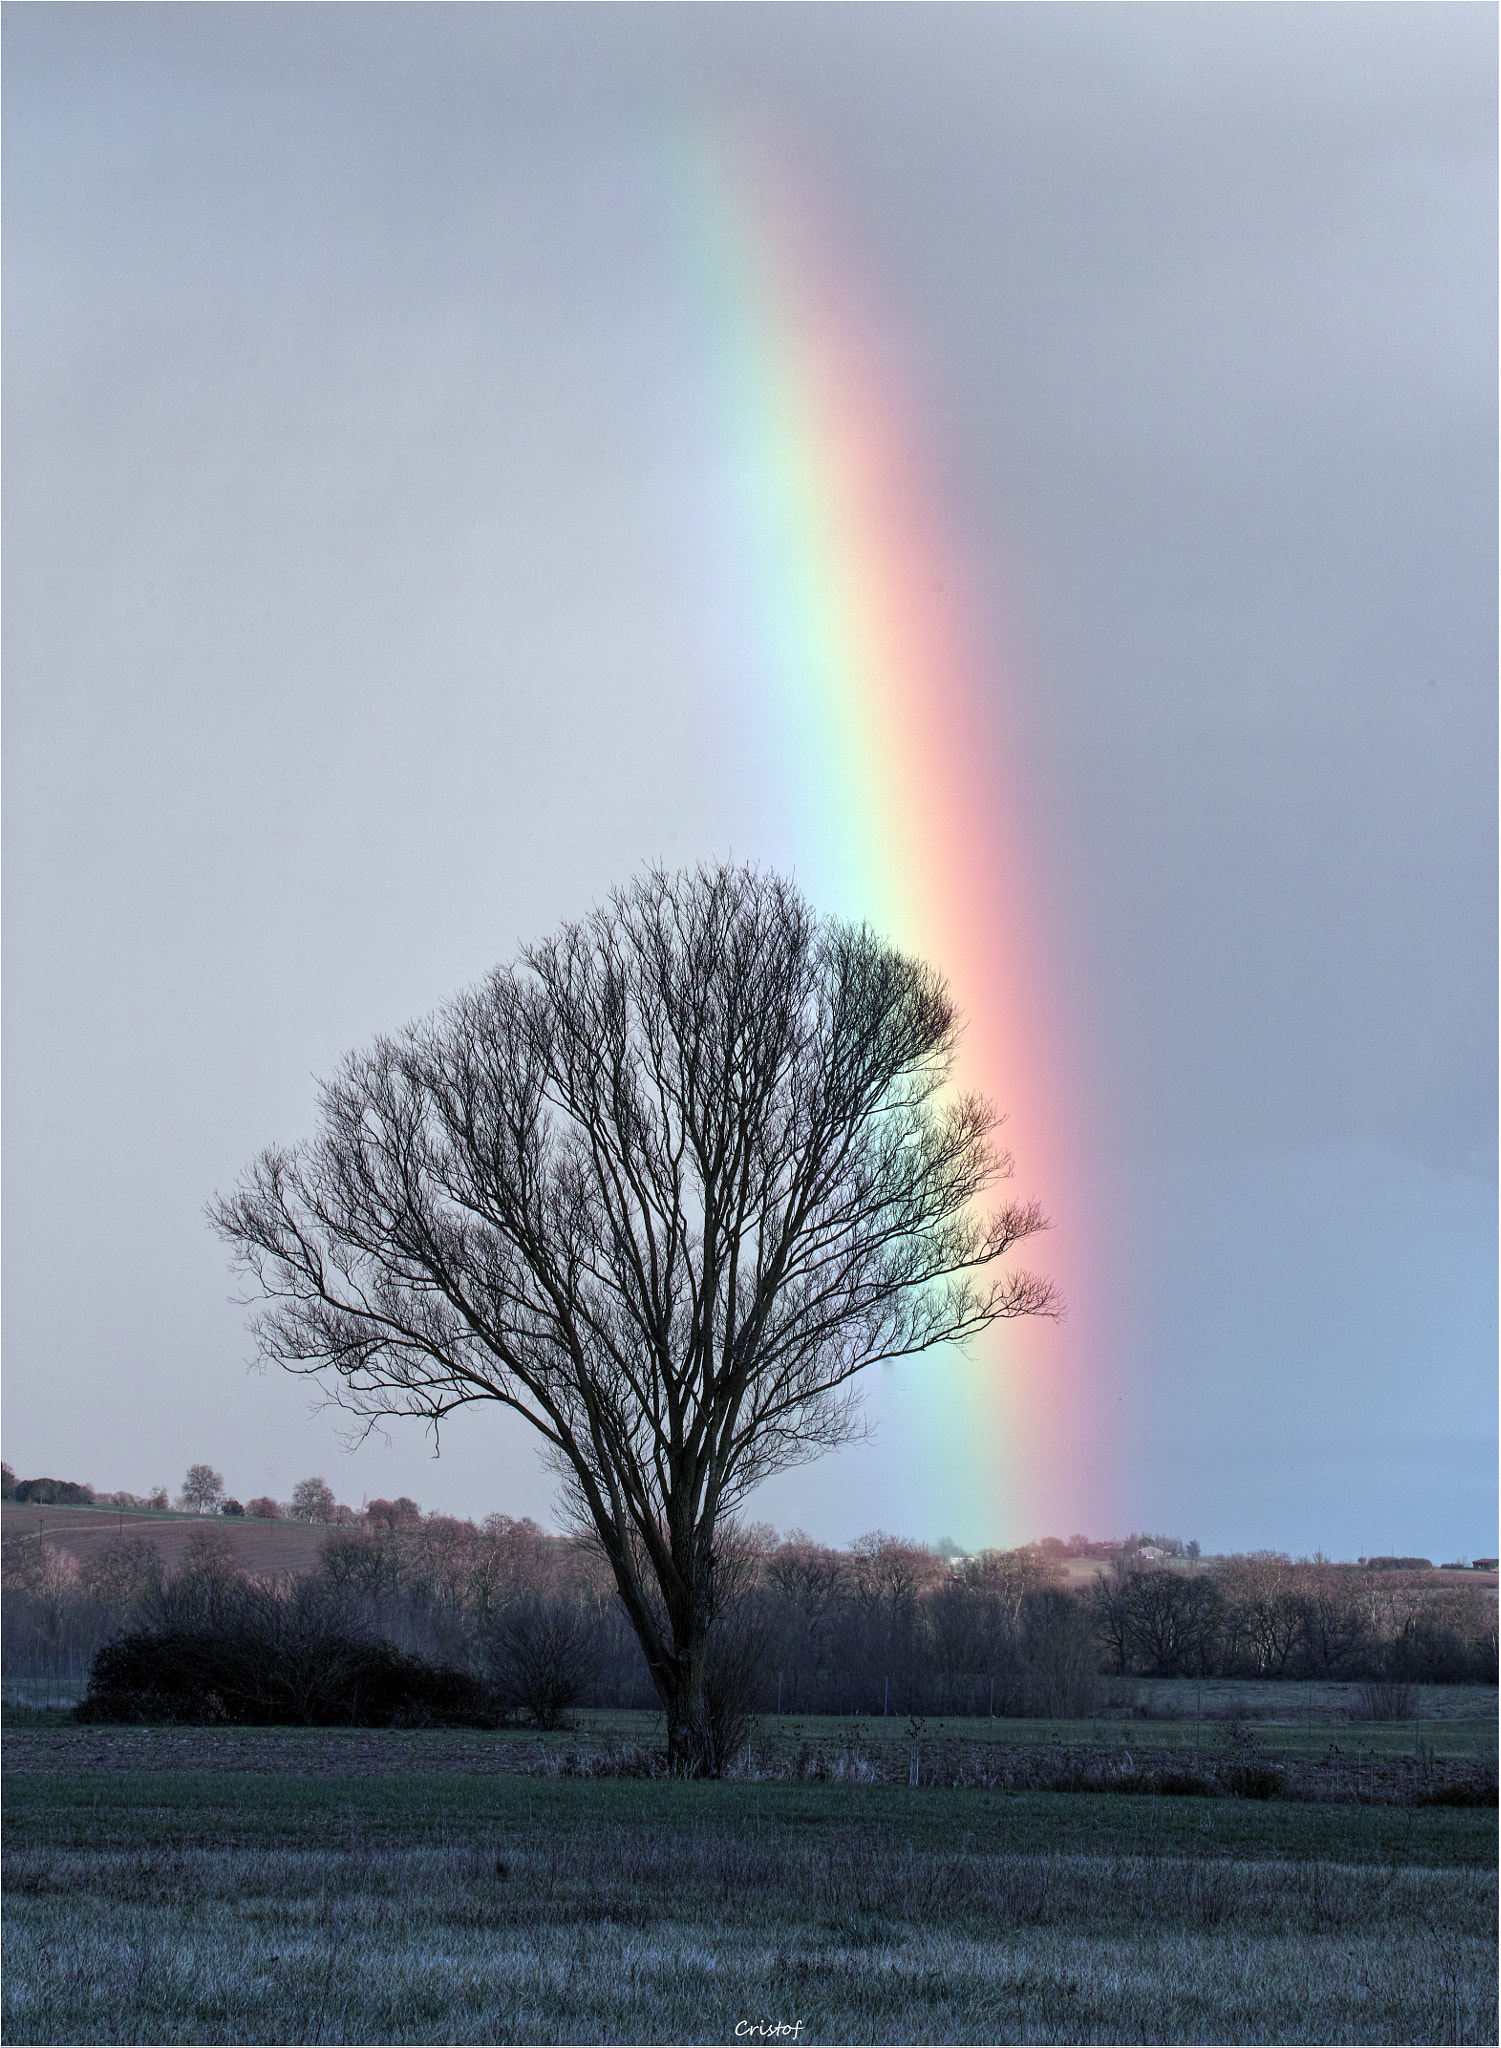 Sigma SD1 Merrill sample photo. Rainbow tree photography